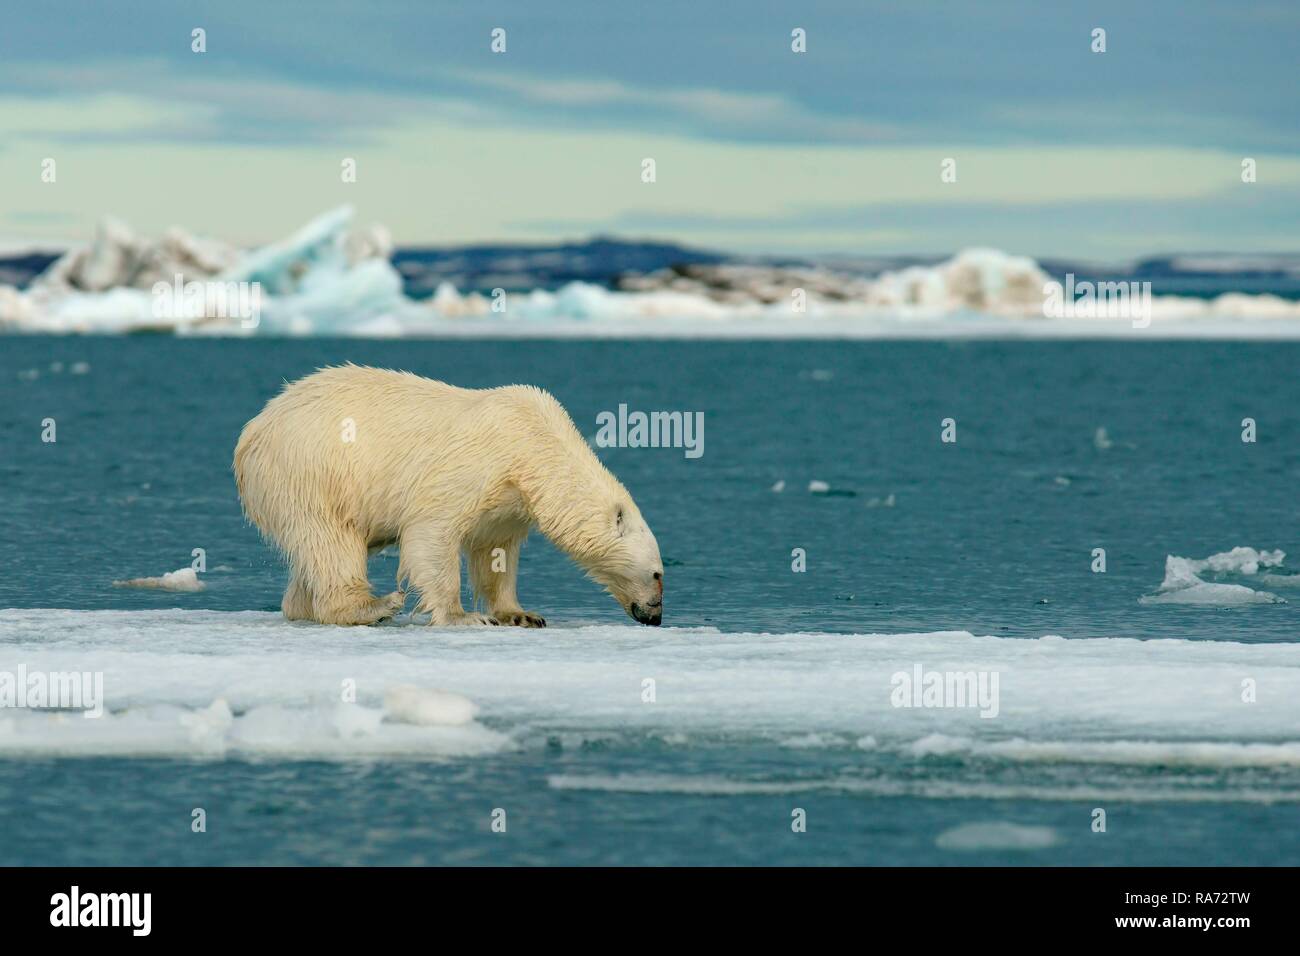 Orso polare (Ursus maritimus) permanente sulla glaçon, Svalbard artico norvegese, Norvegia Foto Stock